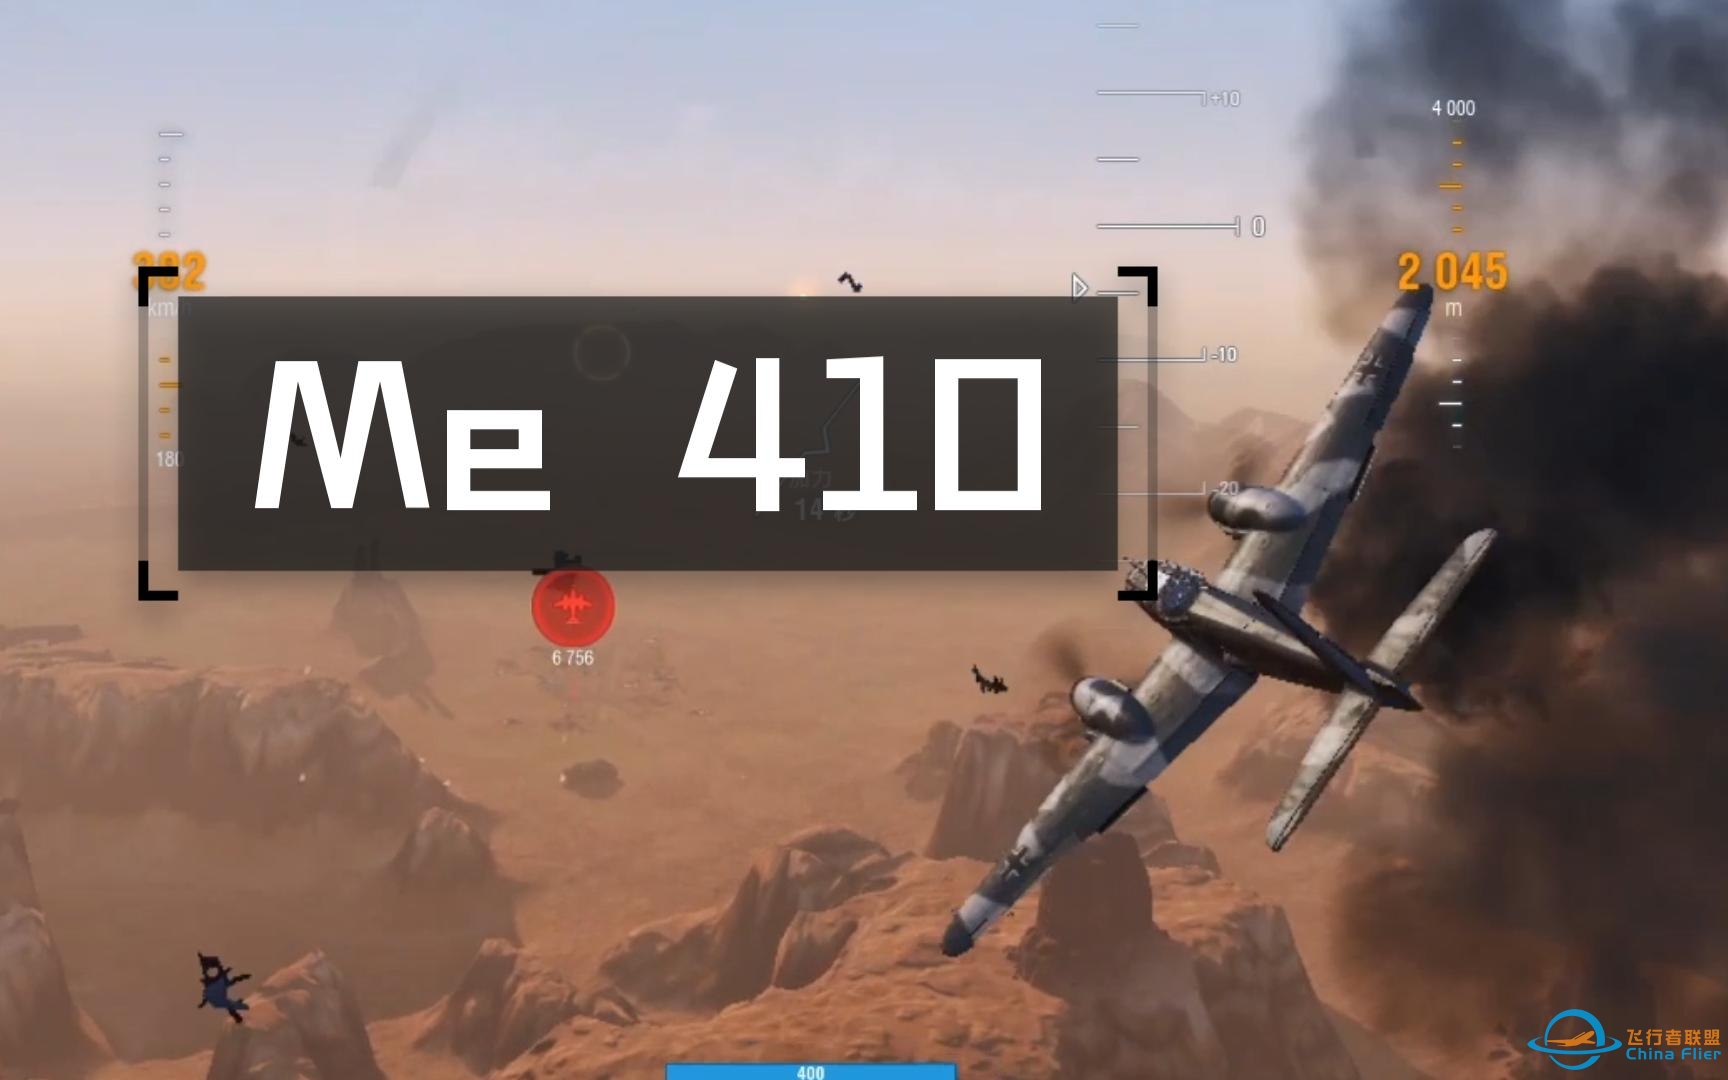 【战机世界】Me410 即使拿下逆天数据也才仅仅领先20分（28击毁+1140占领点+7占区）-9201 